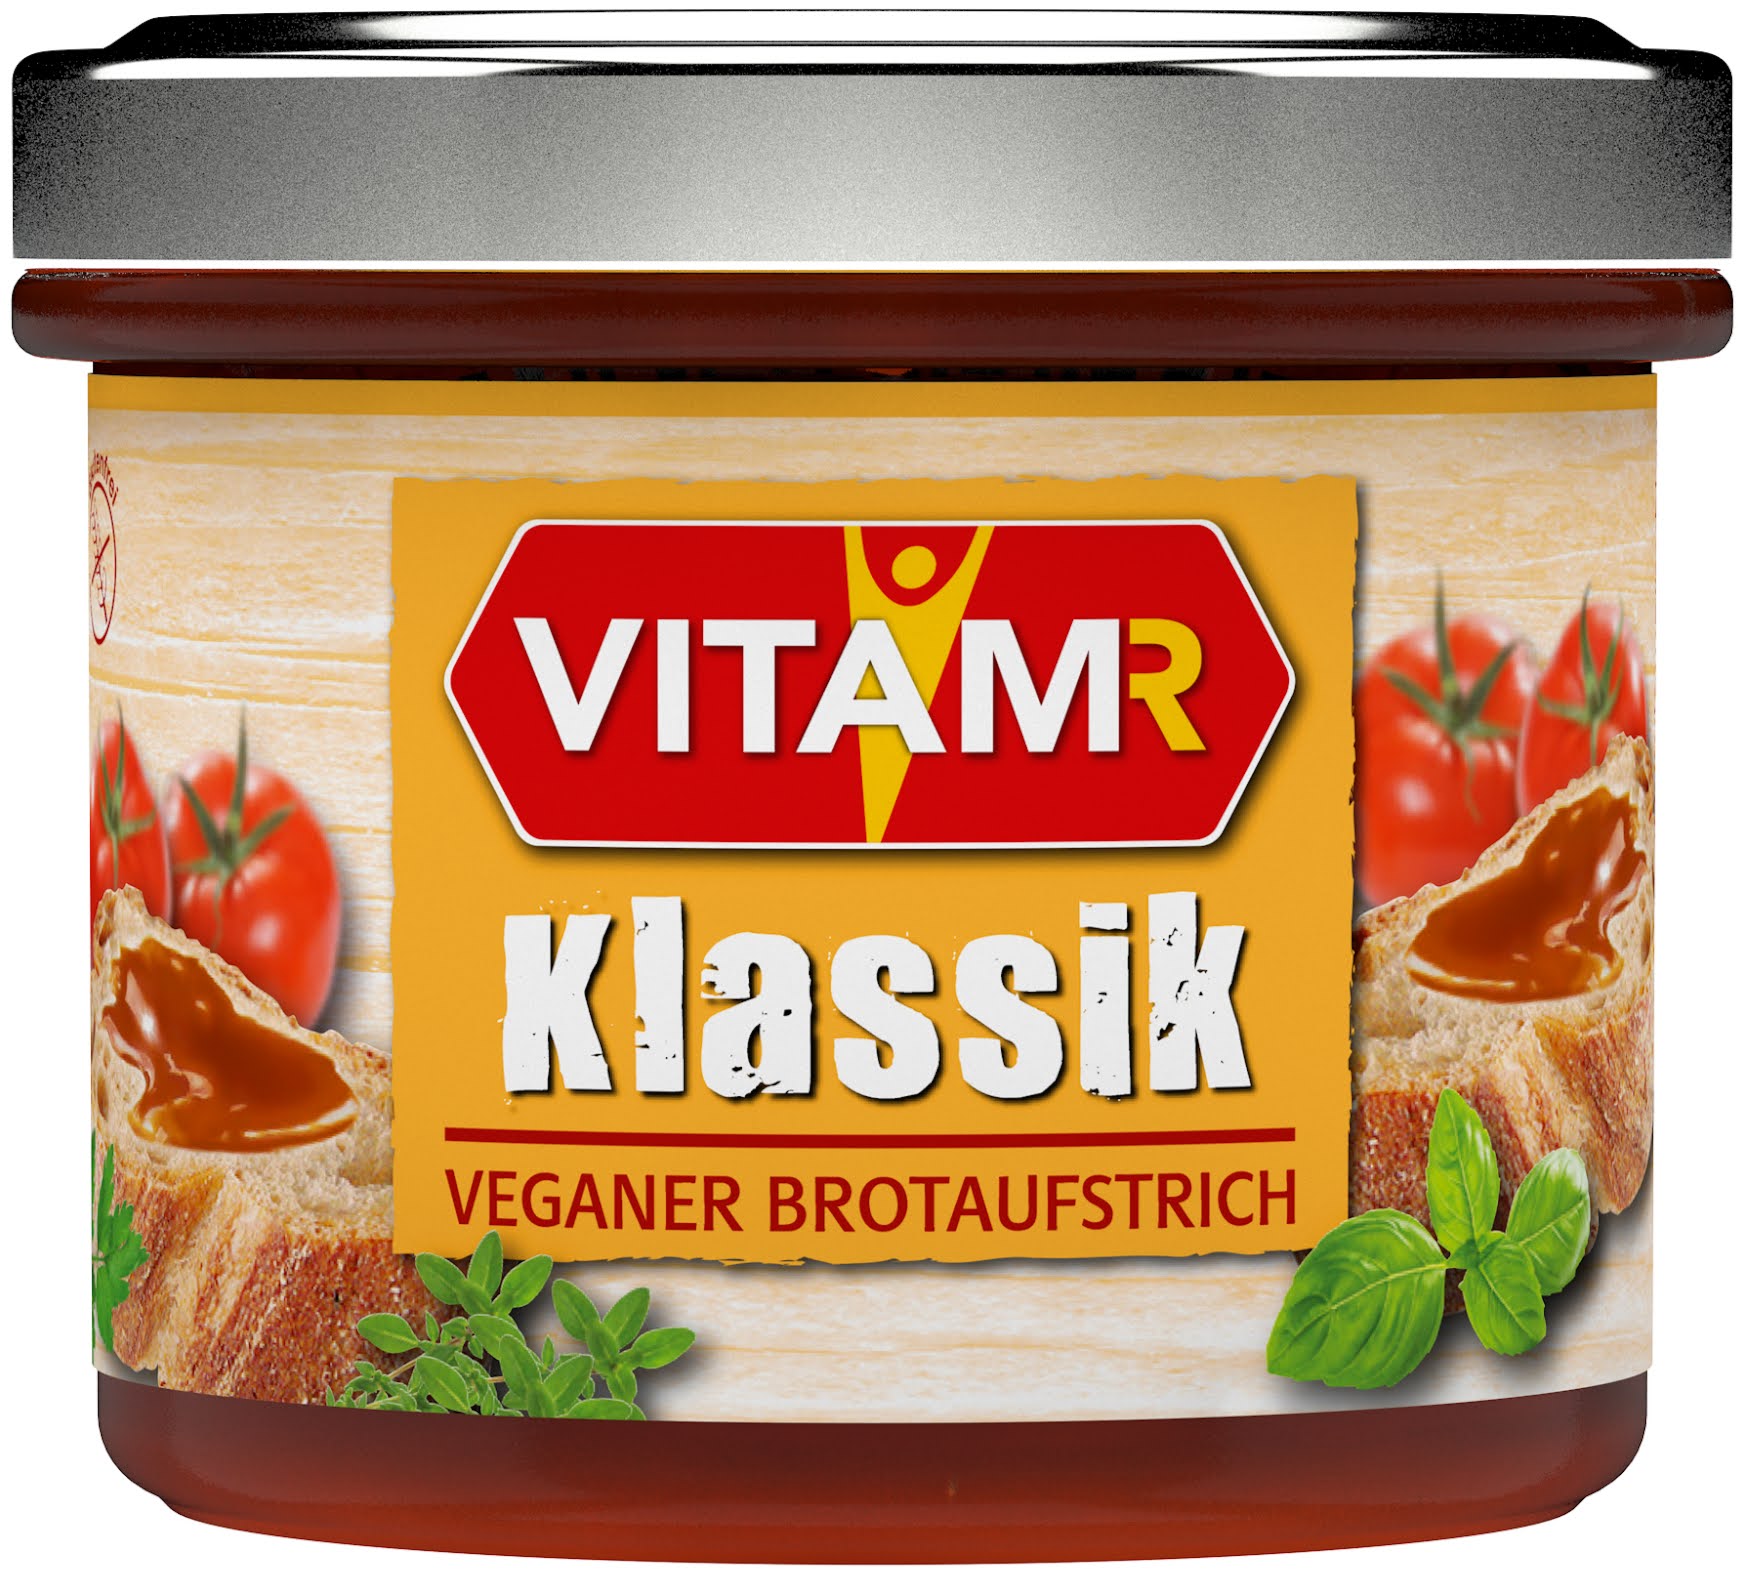 Vitam-R (Veganer Brotaufstrich)